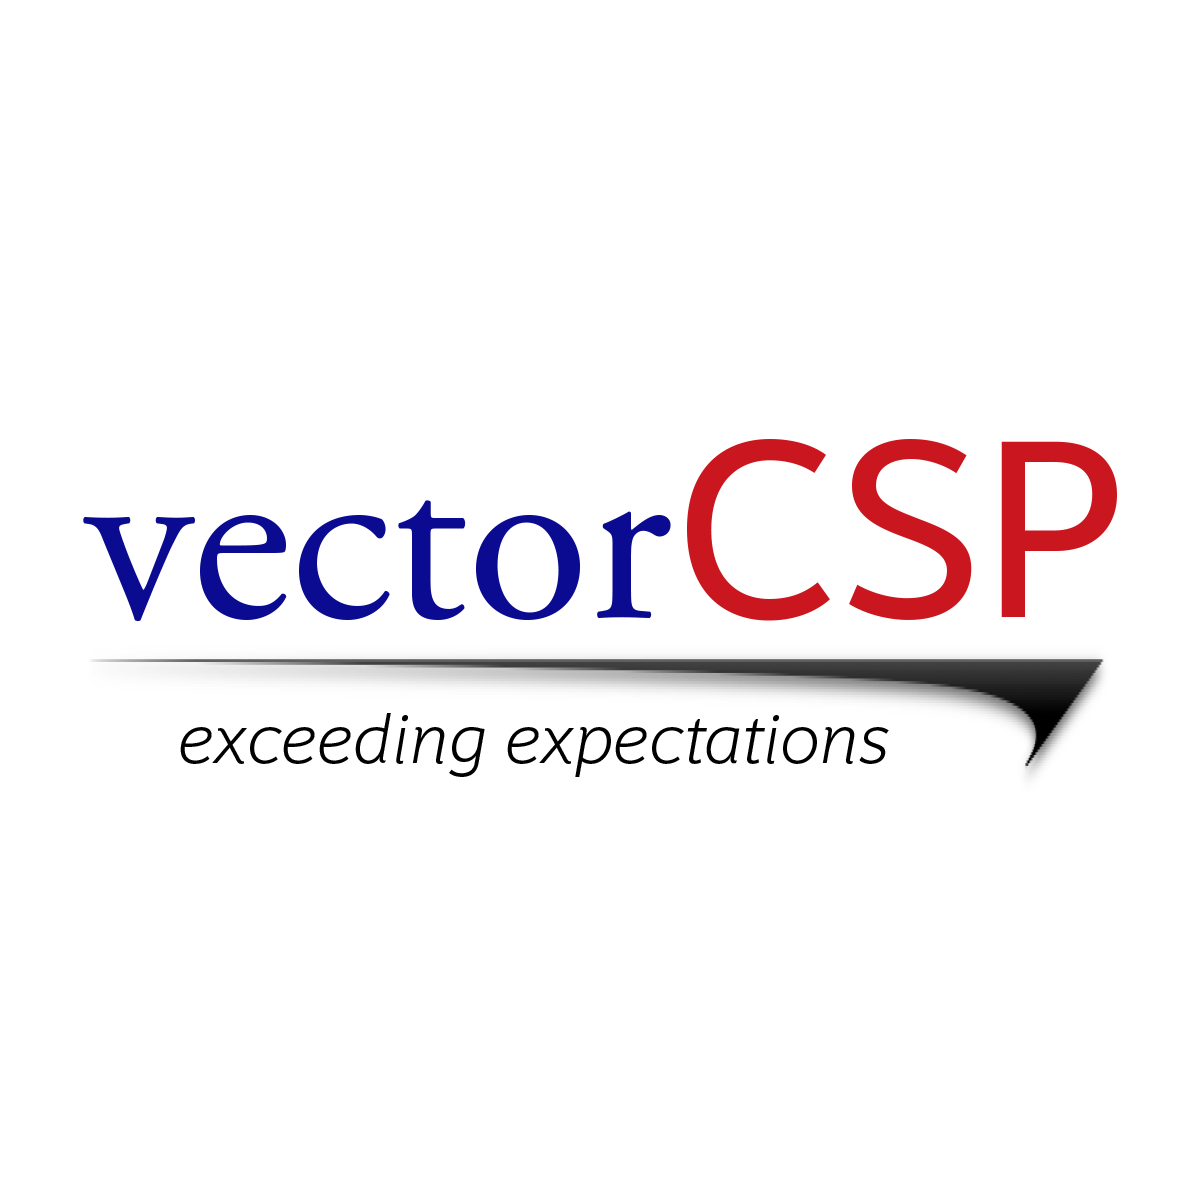 VectorCSP